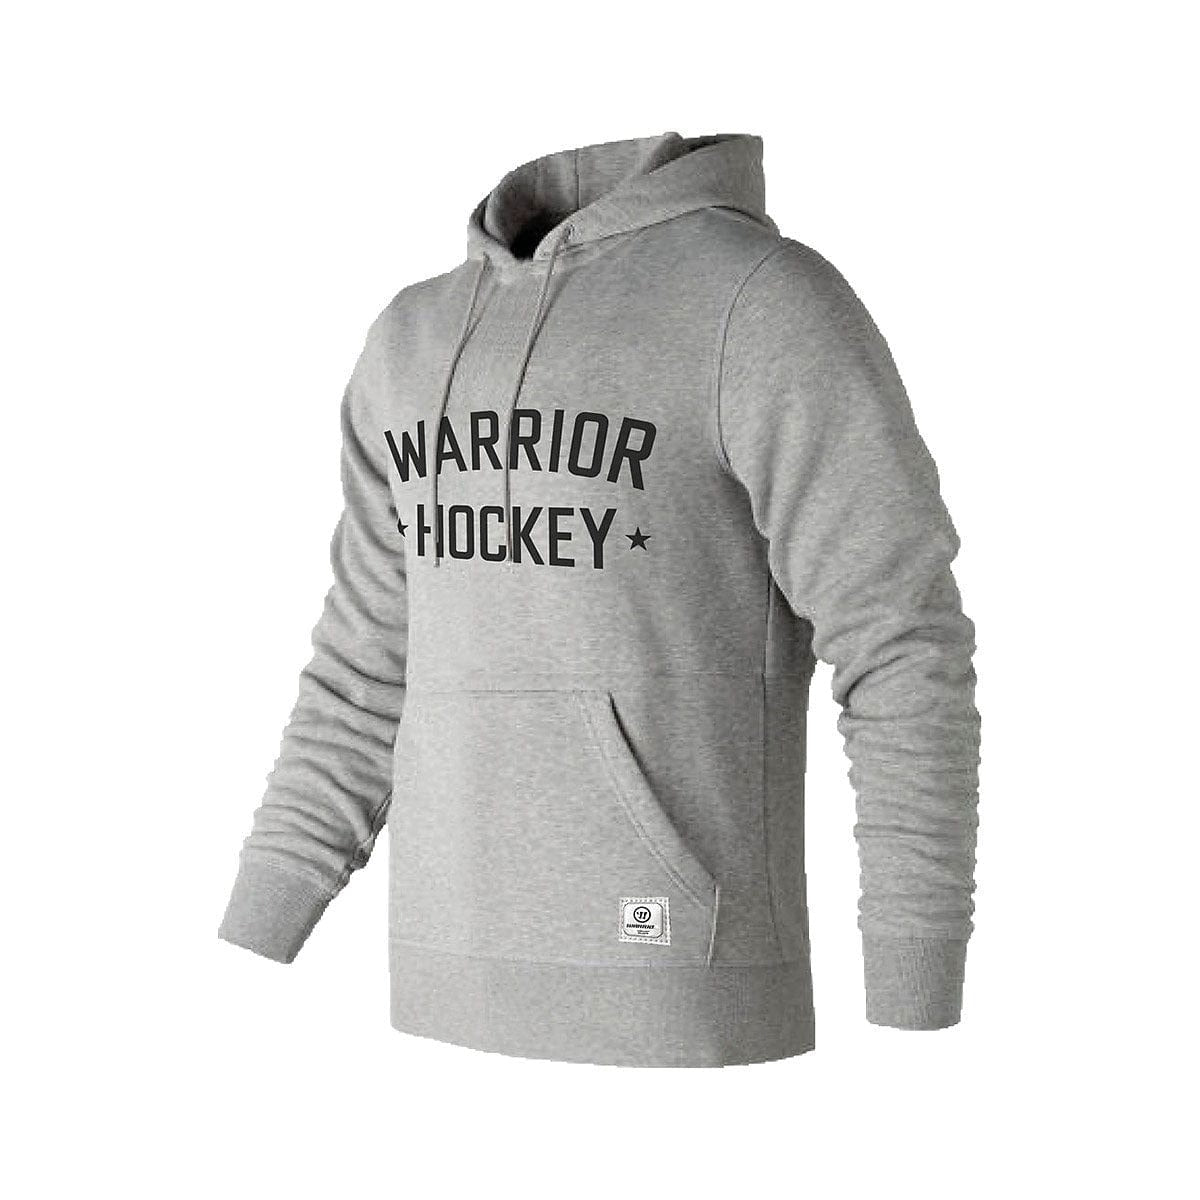 Warrior Hockey Pullover Hoody